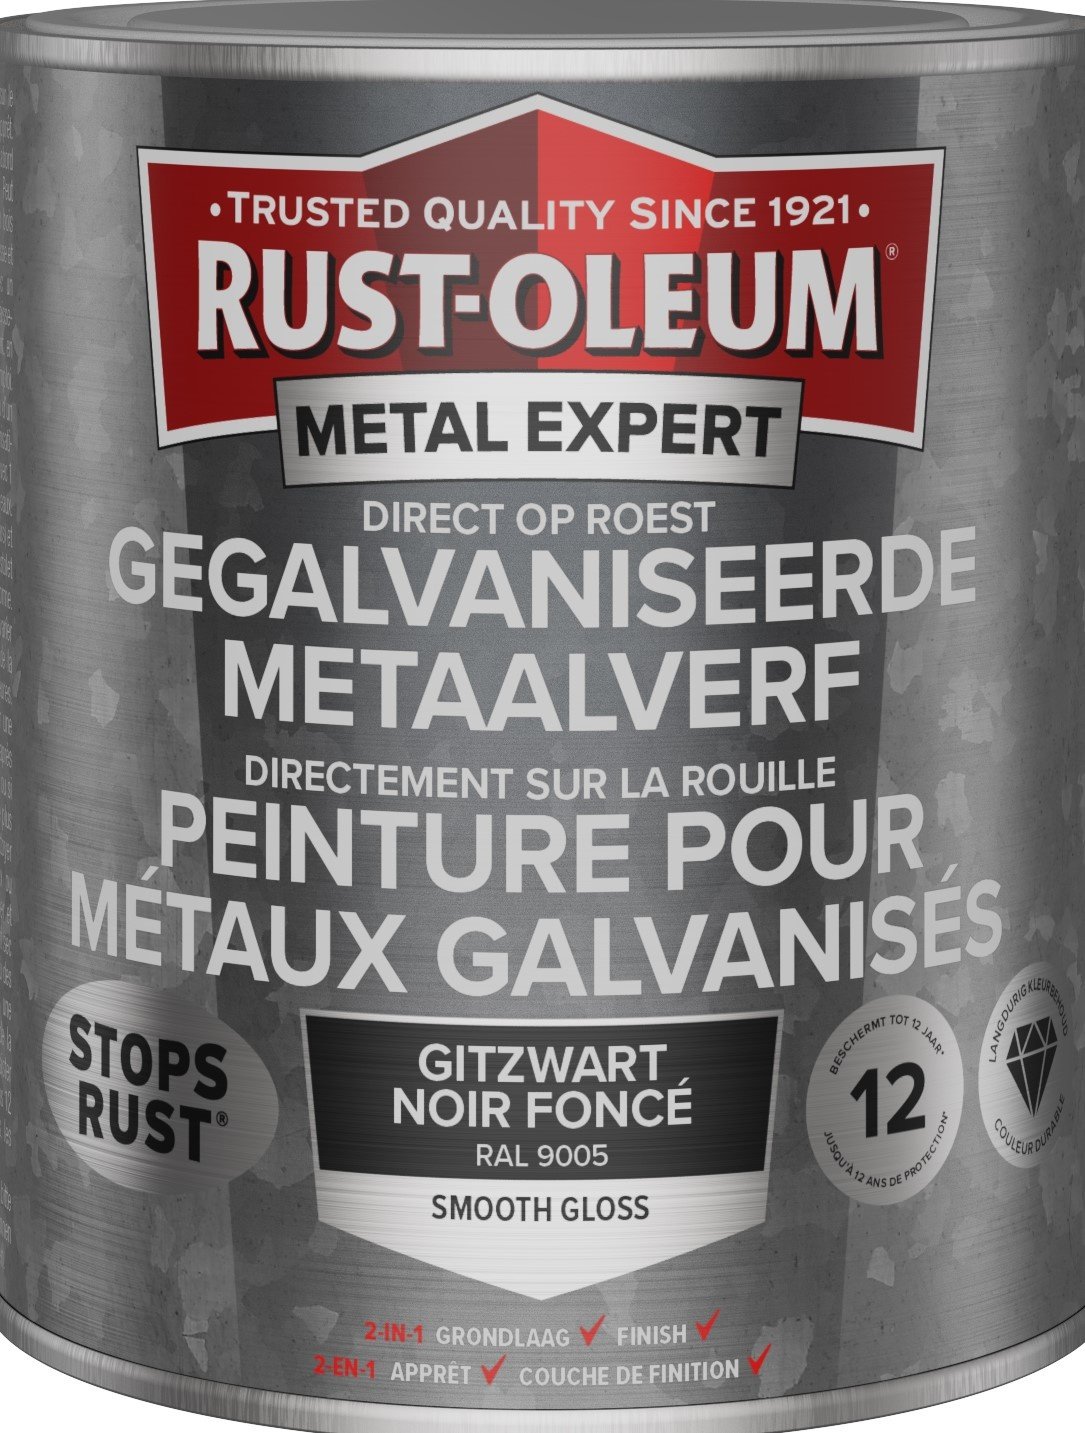 rust-oleum metal expert gegalvaniseerde metaalverf ral 9005 0.75 ltr